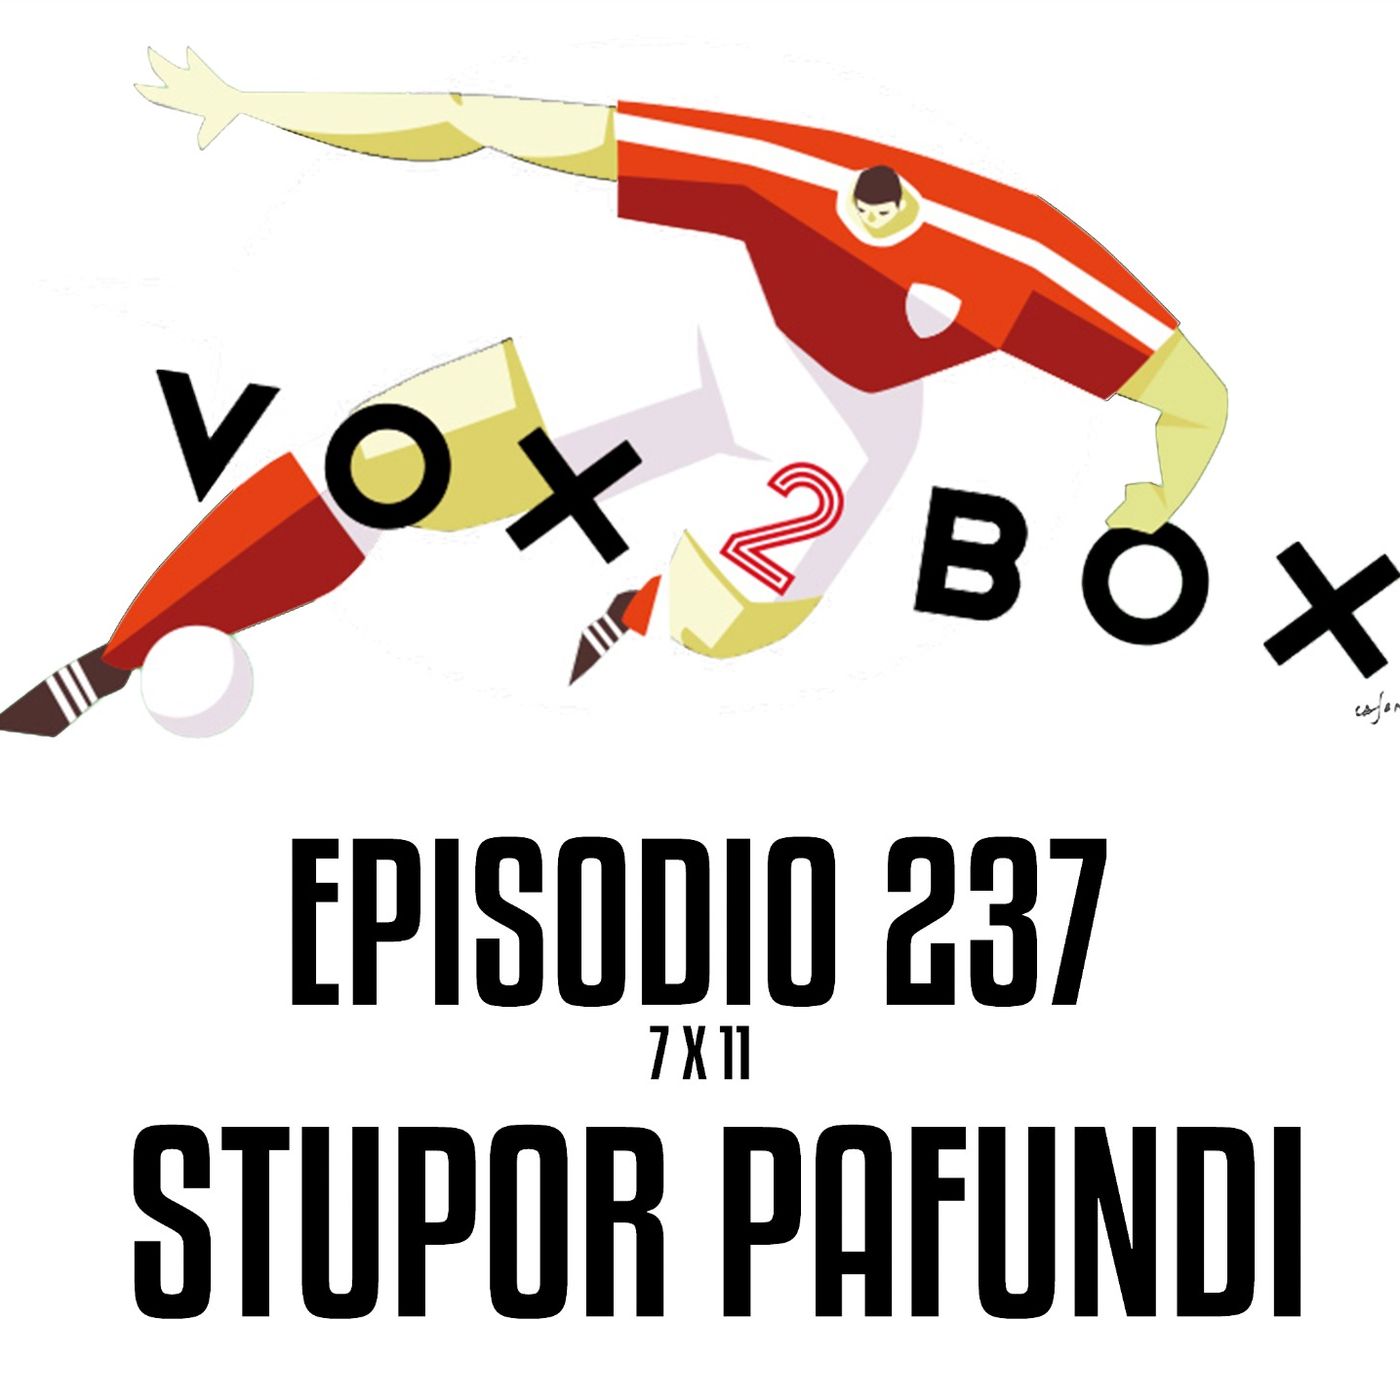 Episodio 237 (7x11) - Stupor Pafundi